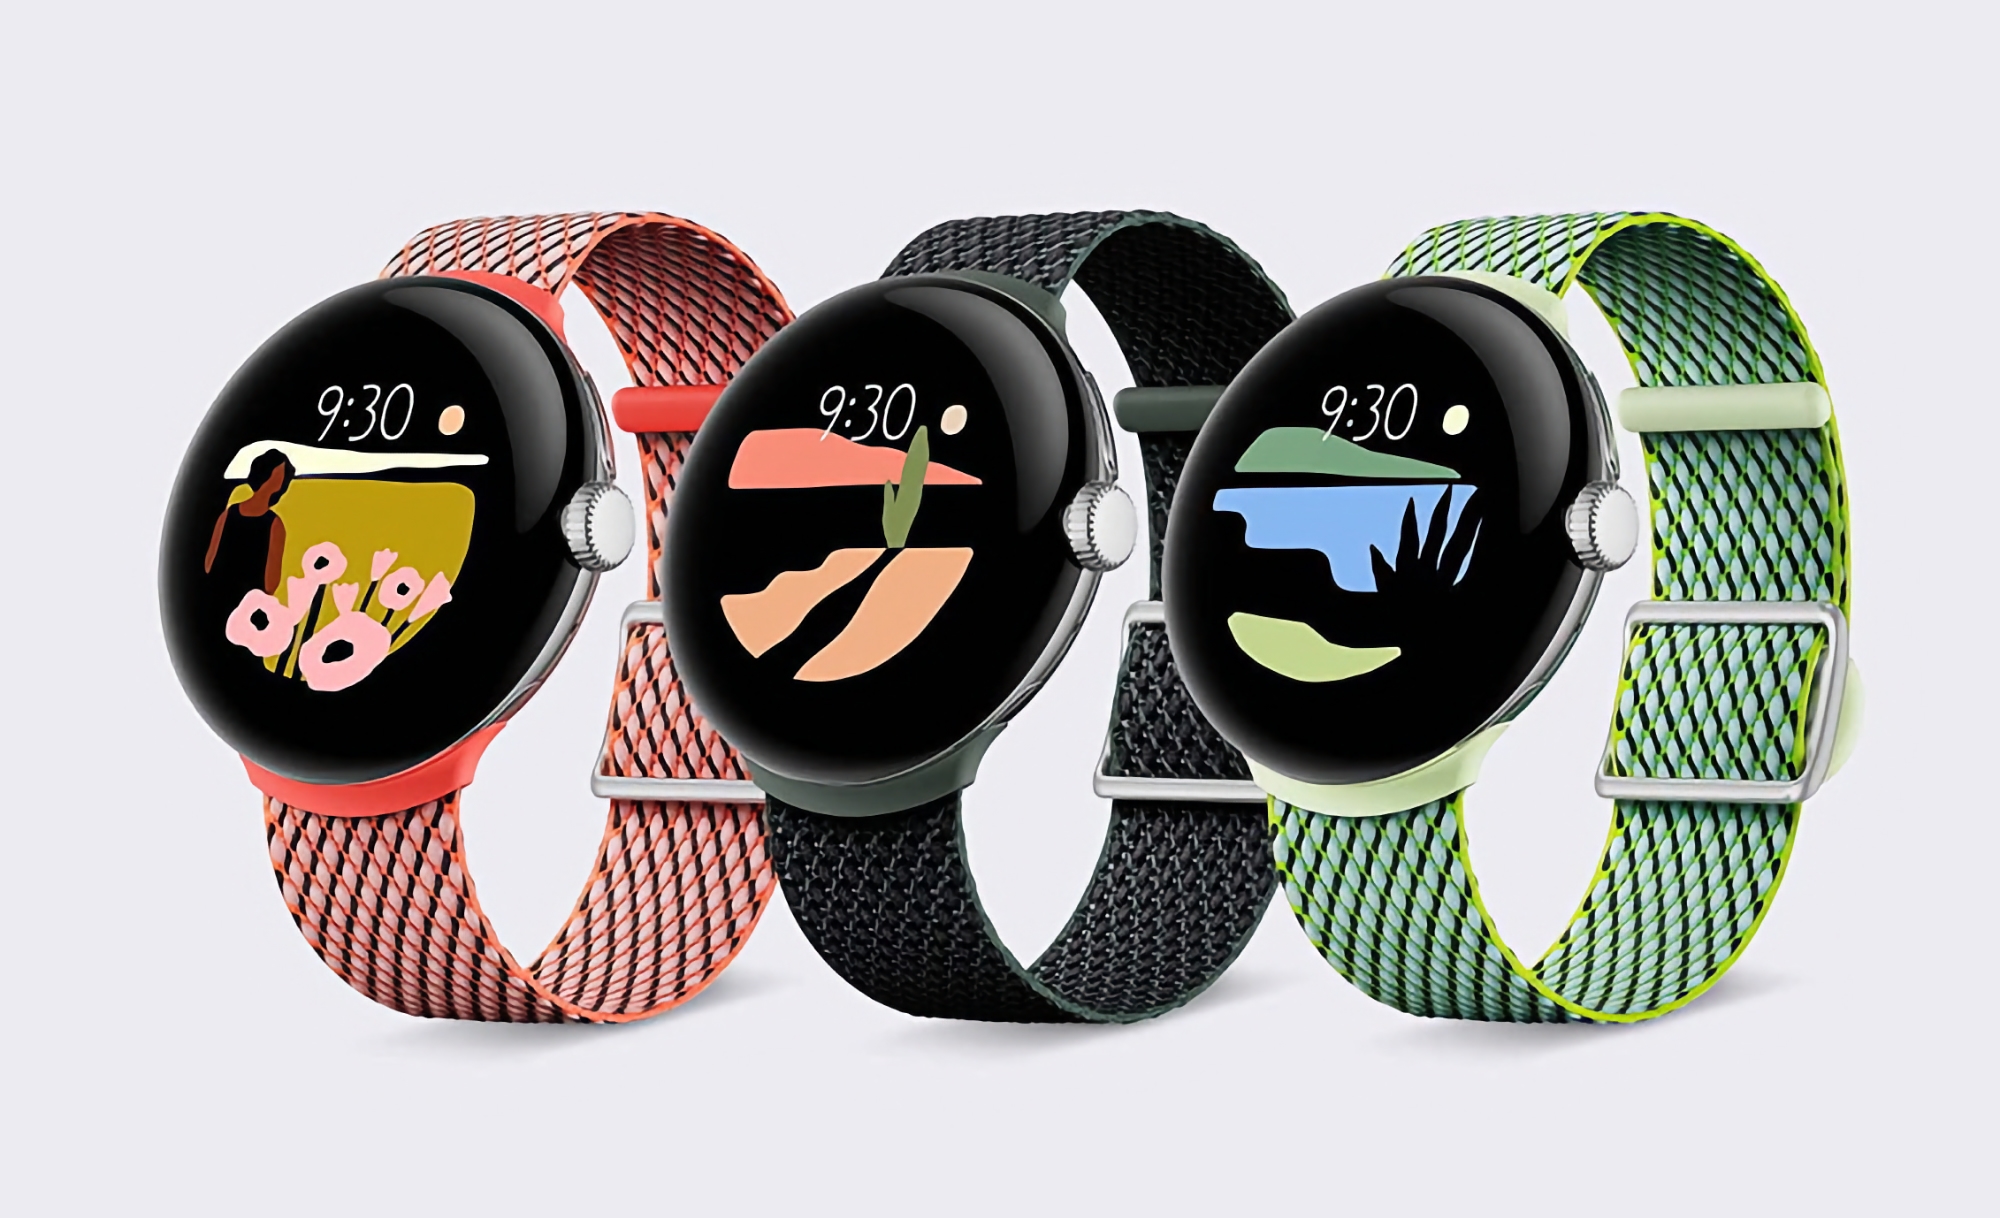 Google Pixel Watch sur Amazon : smartwatch avec écran AMOLED rond, puce Exynos et Wear OS embarqué pour 30 $ de réduction